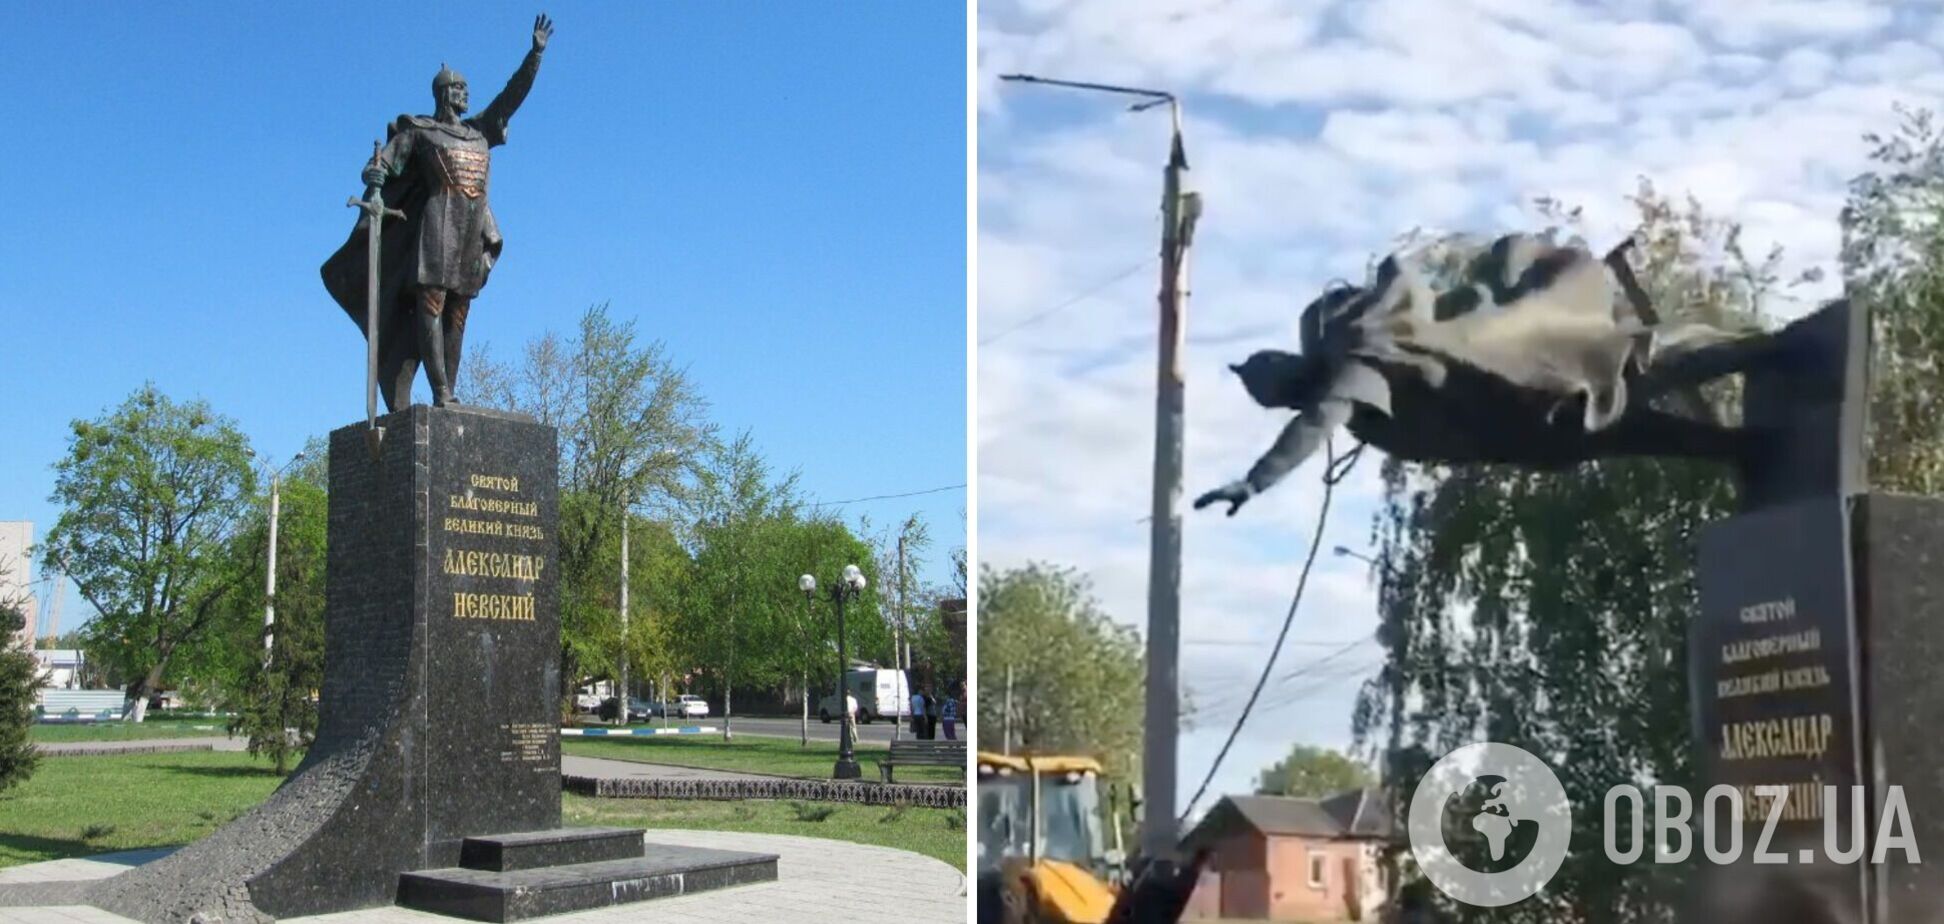 У Харкові скинули з постаменту пам'ятник князю Олександру Невському. Відео